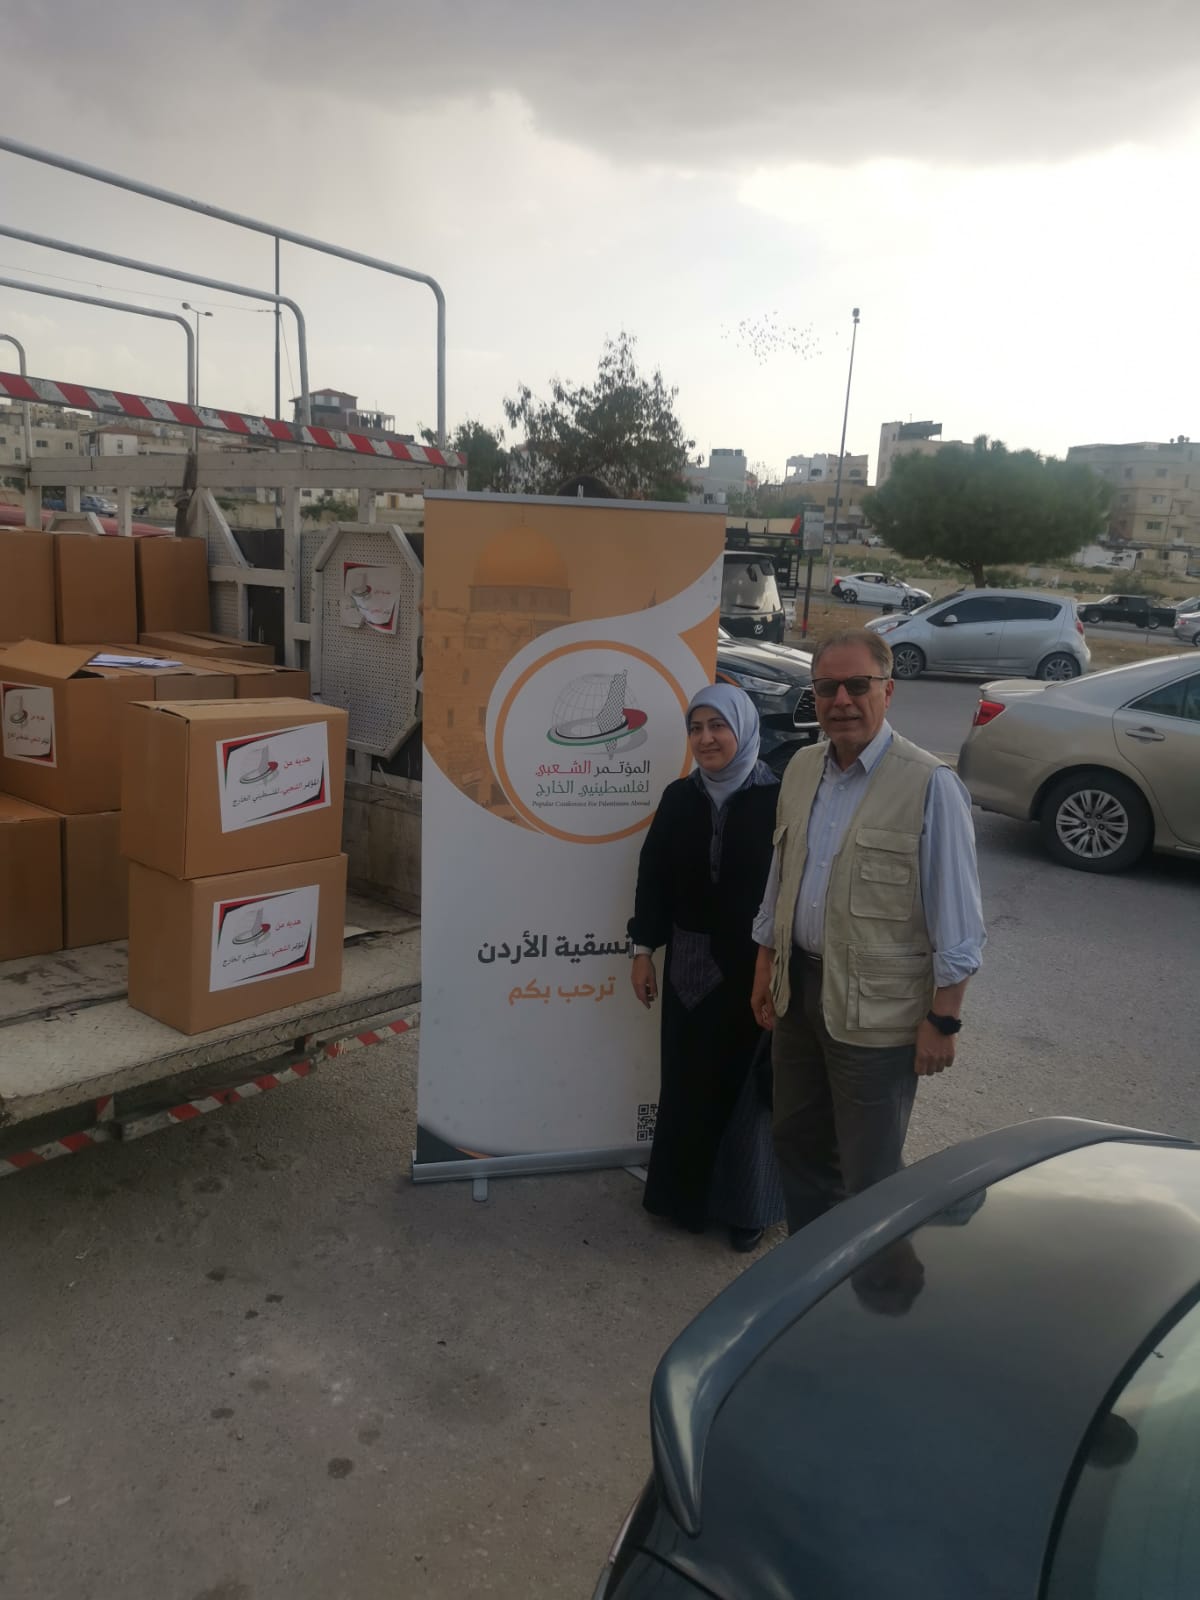  المؤتمر الشعبي ينفذ حملة "طرود الخير" في مخيمات اللاجئين الفلسطينيين في الأردن 